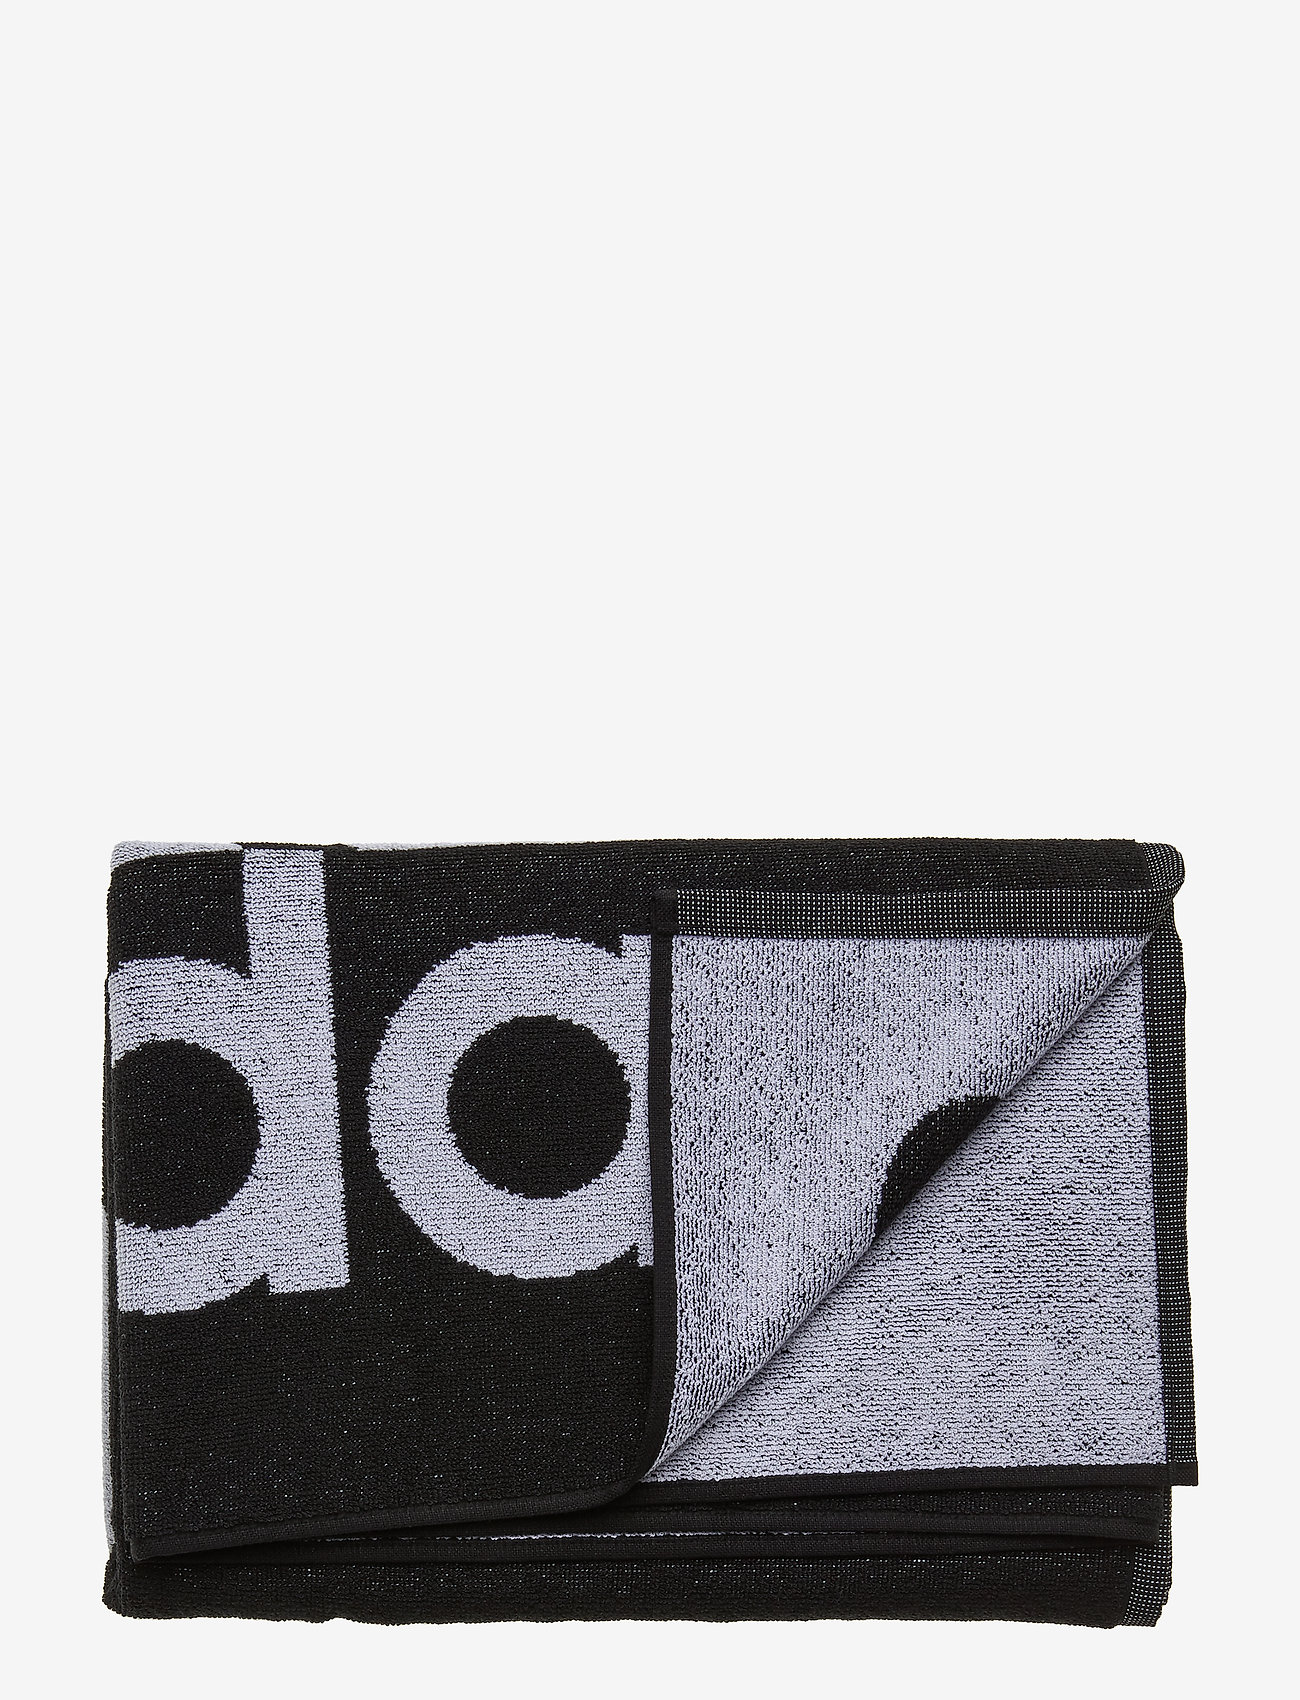 Adidas Towel Large (Black) (33 